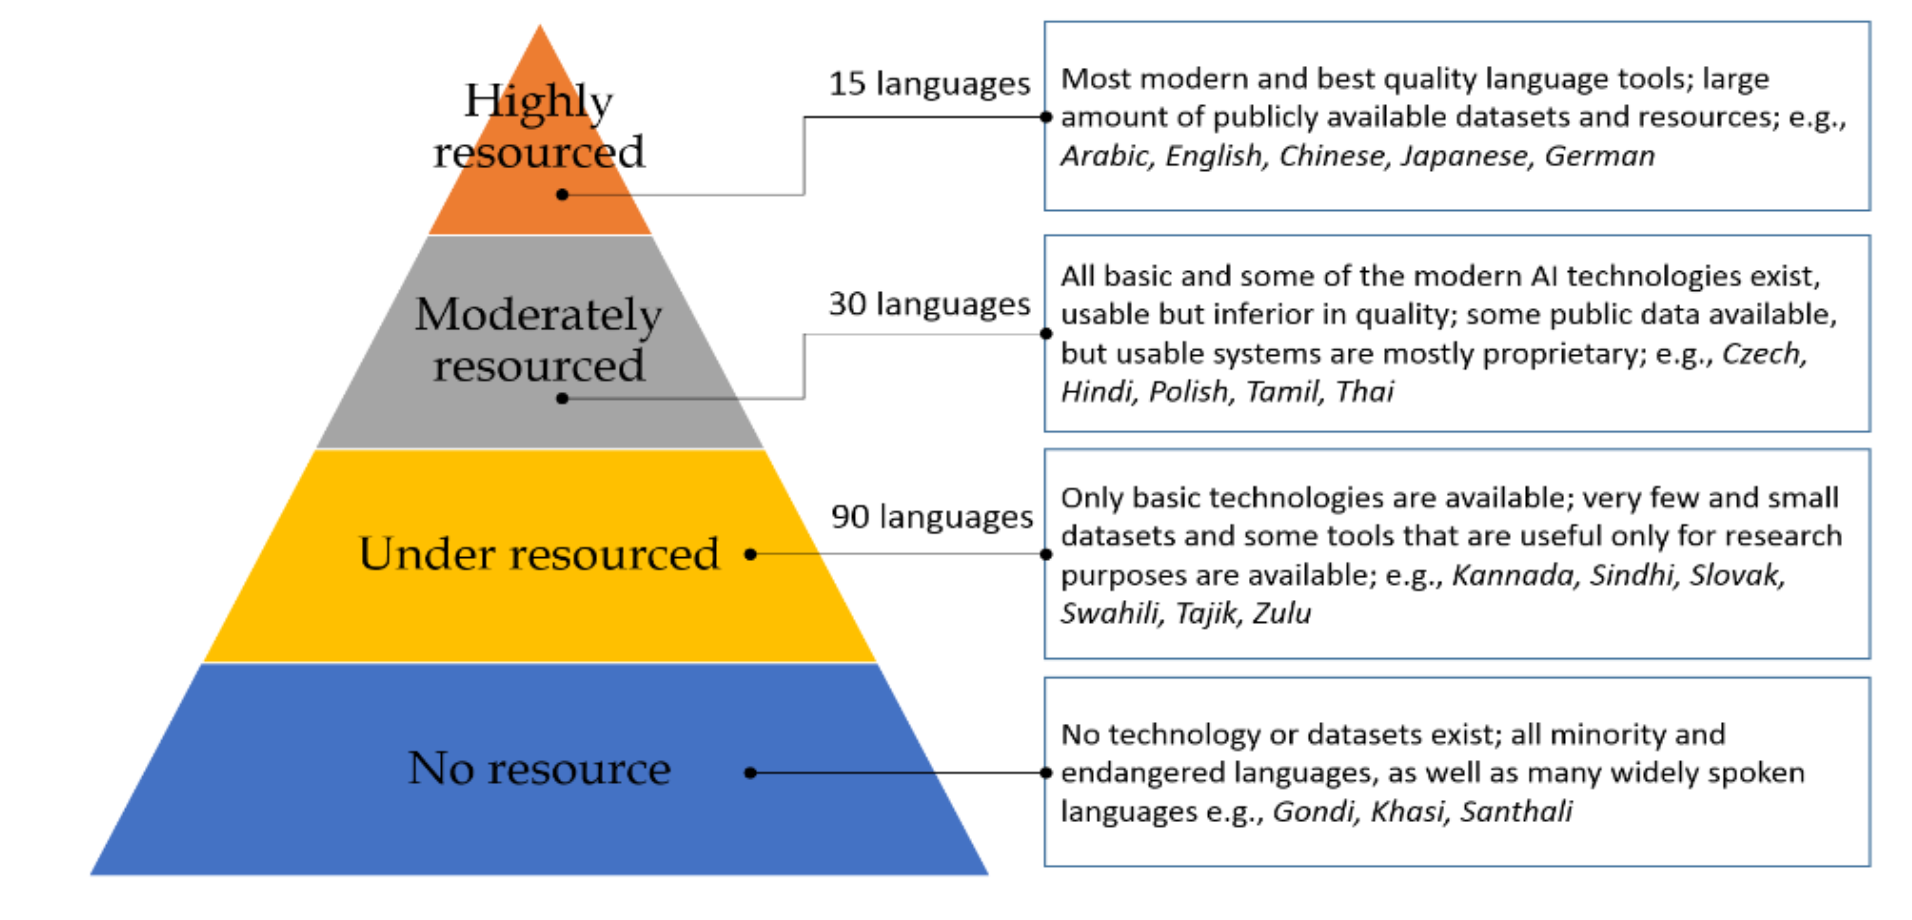 Dil teknolojisilerinin, araçlarının ve kaynaklarının mevcudiyetine göre dillerin sınıflandırılması